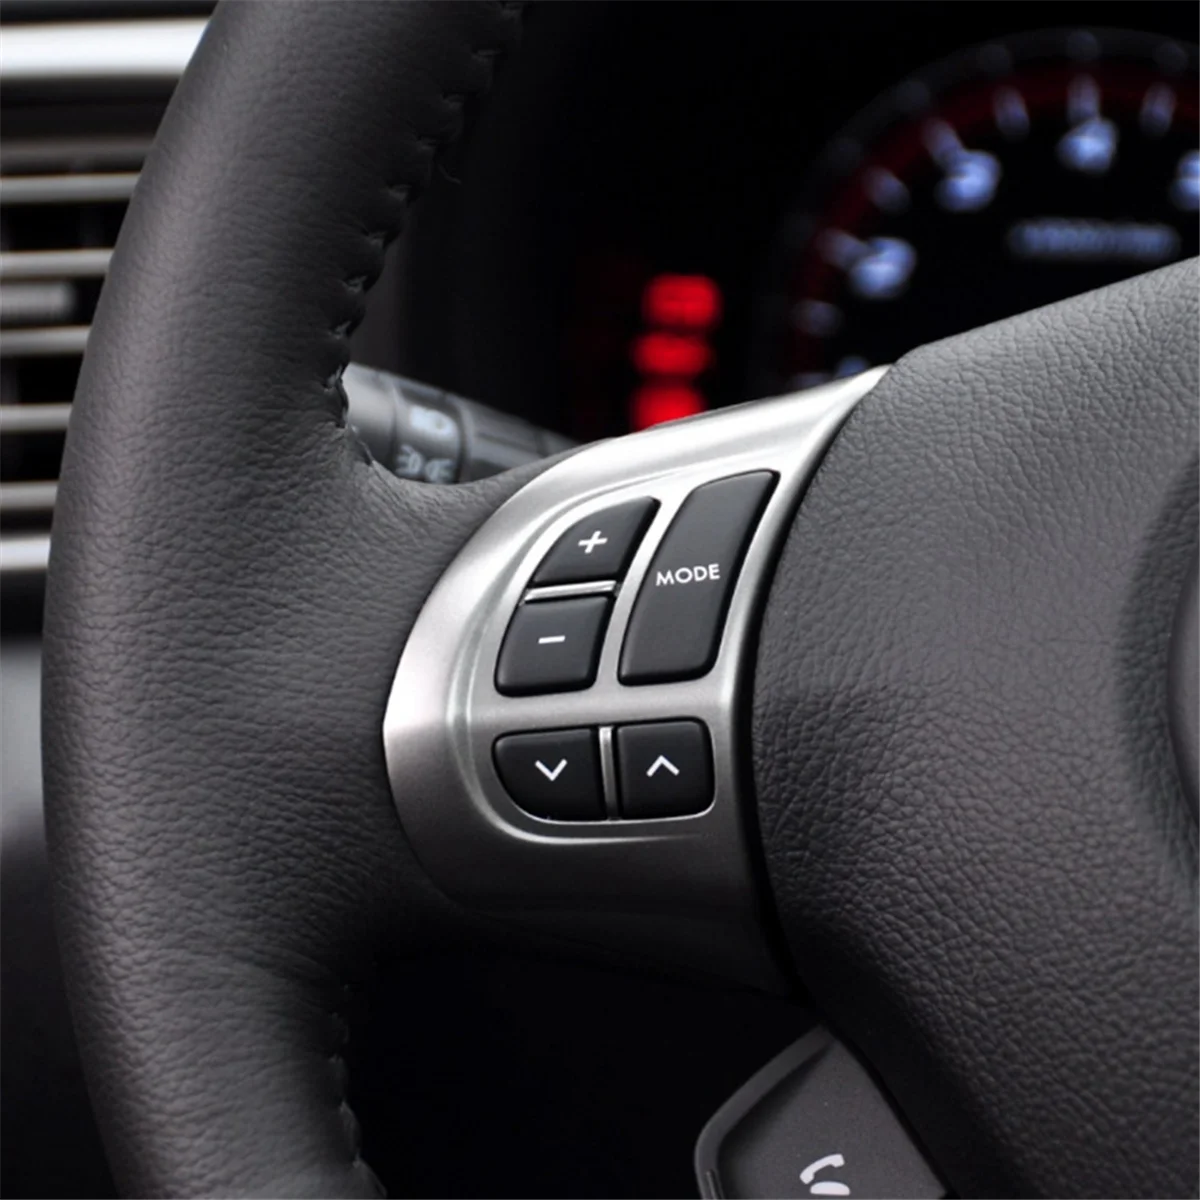 Переключатель кнопки управления аудиосистемой на руле автомобиля Переключатель круиз-контроля с жгутом проводов для Subaru Forester - 4